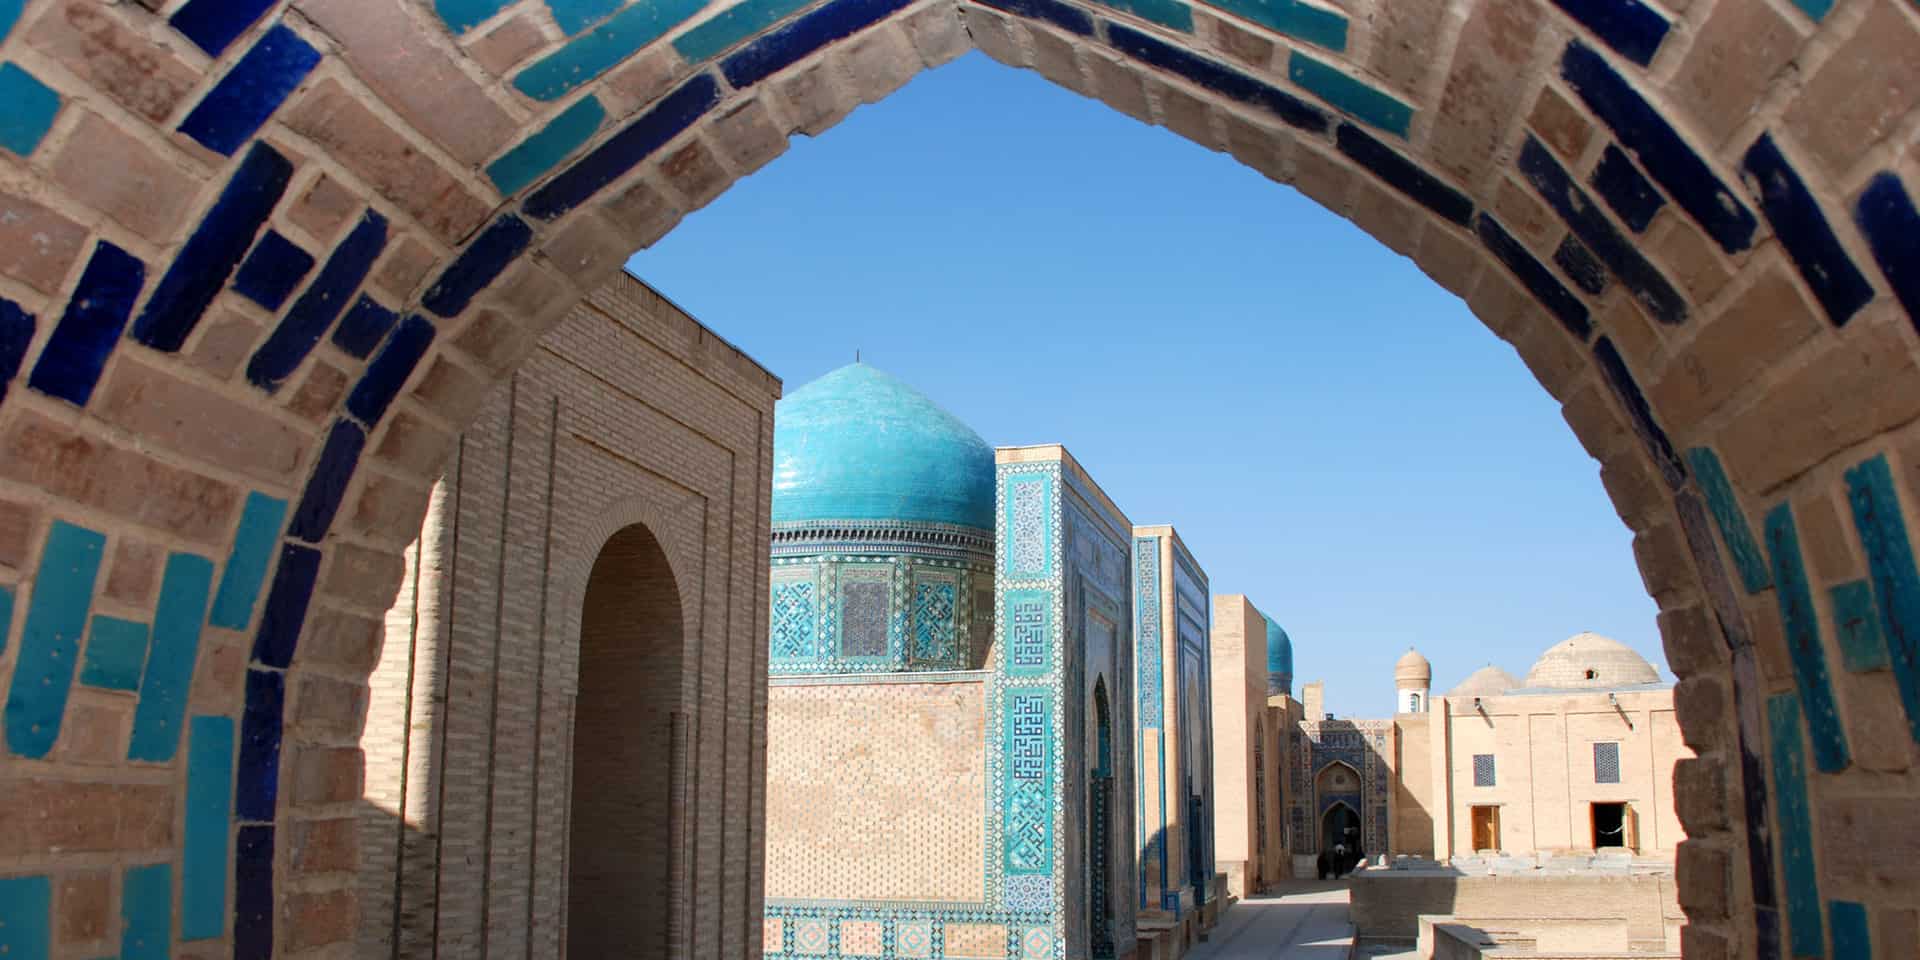 Shahizinda i Samarkand, Uzbekistan